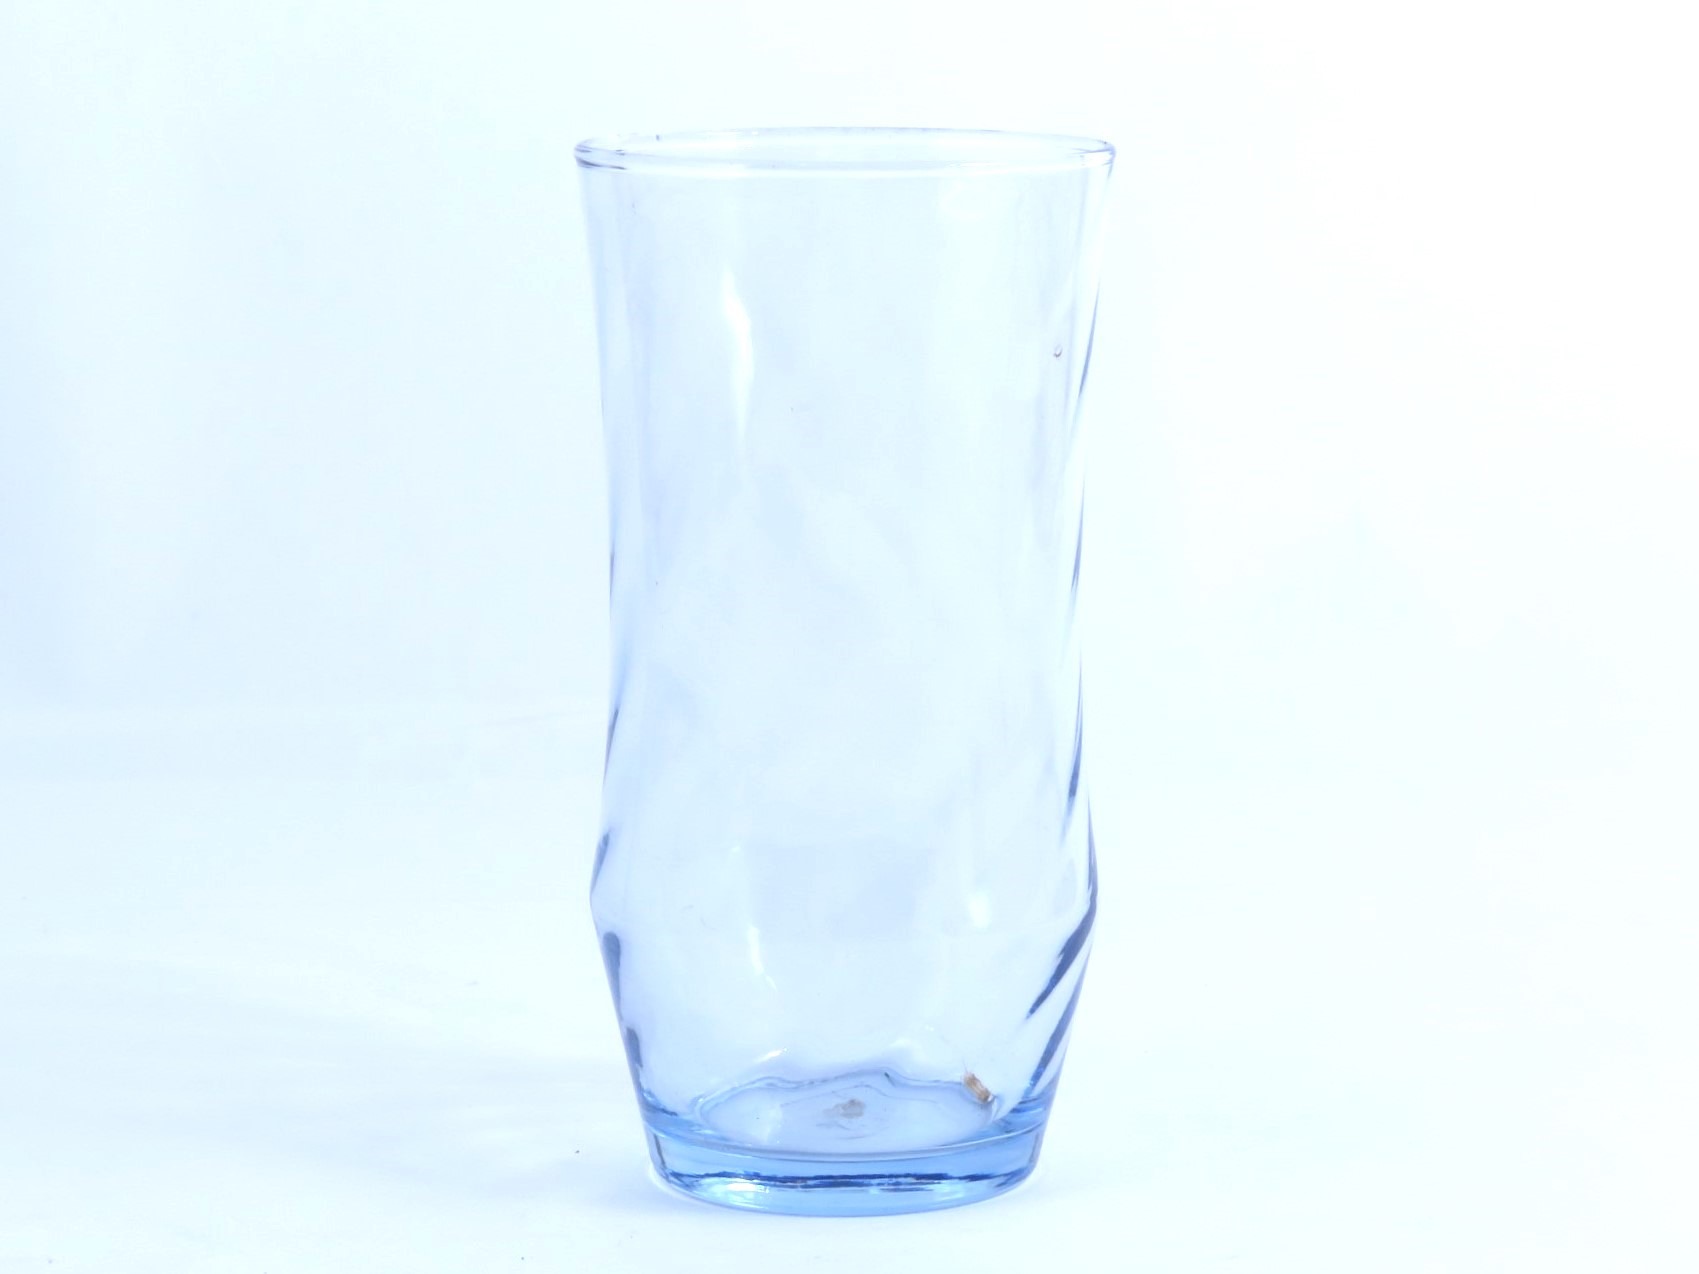 כוסות מים זכוכית